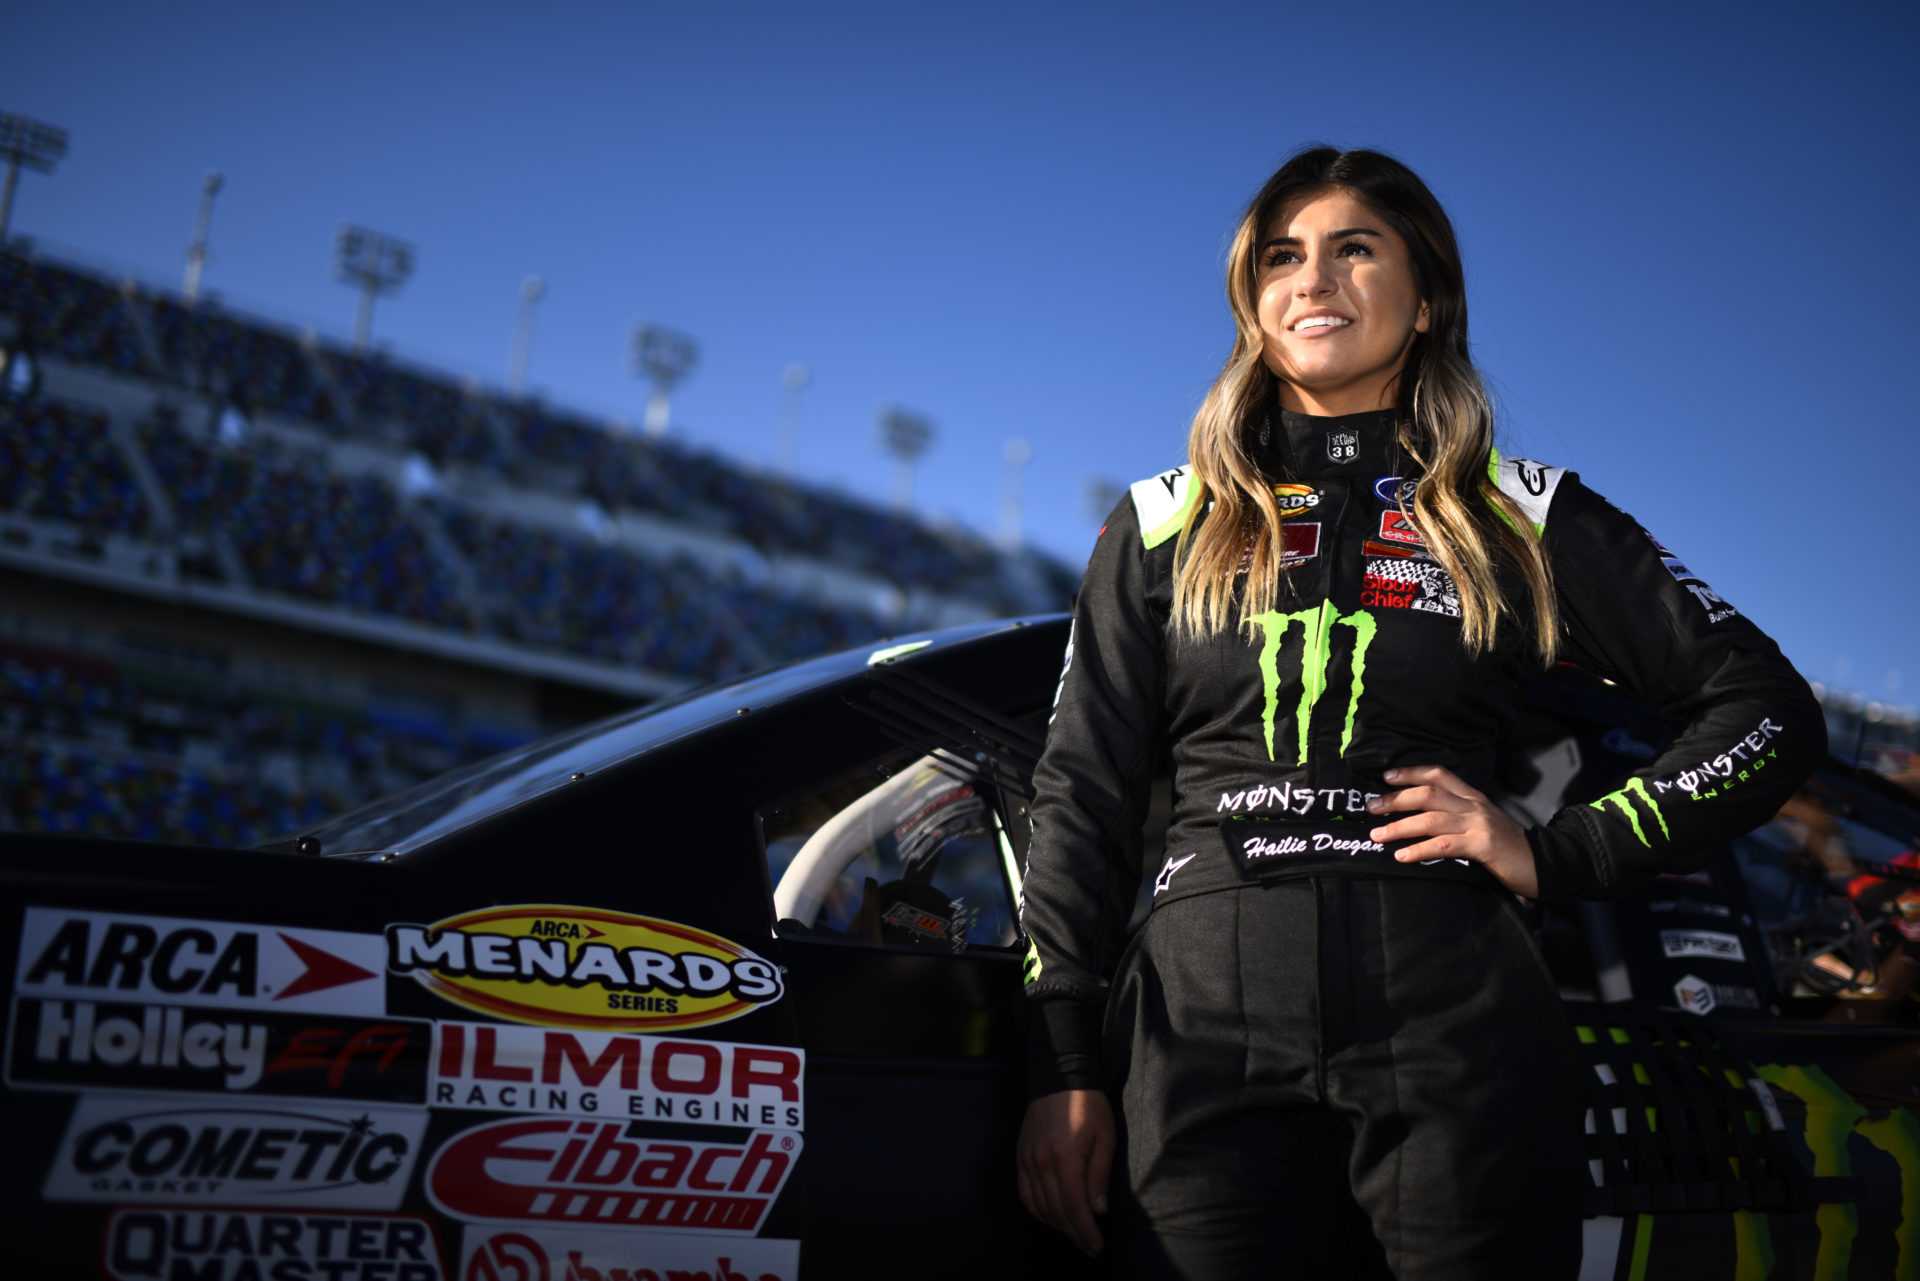 Débuts de Deegan’s Truck, Daytona Heroics de Decker: les meilleurs moments impliquant des pilotes NASCAR féminines à partir de la saison 2020